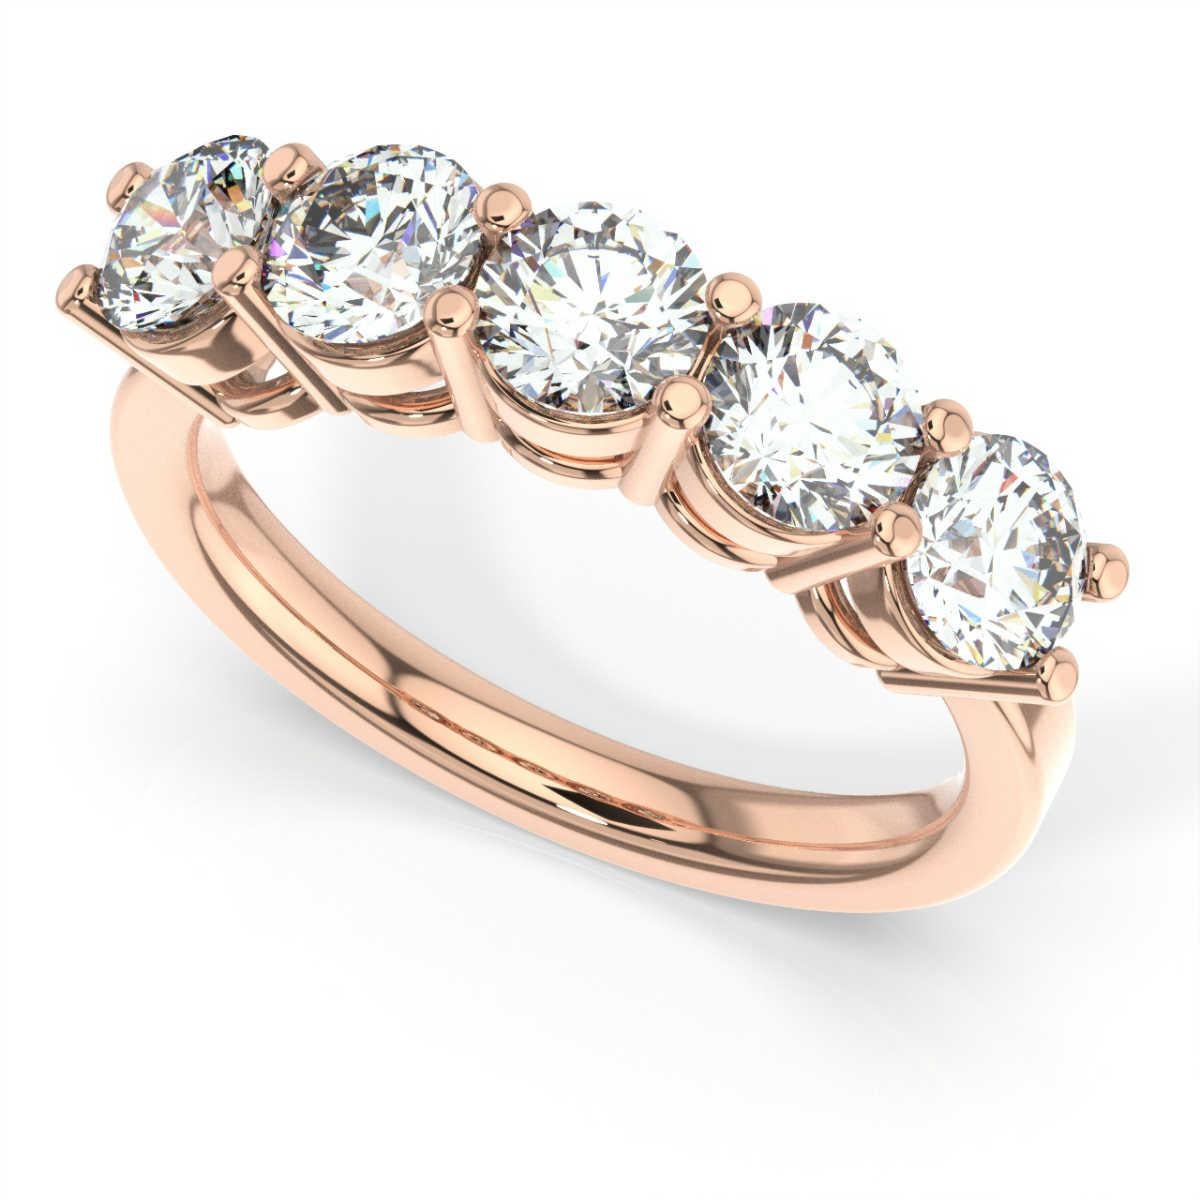 5 carat diamond ring rose gold